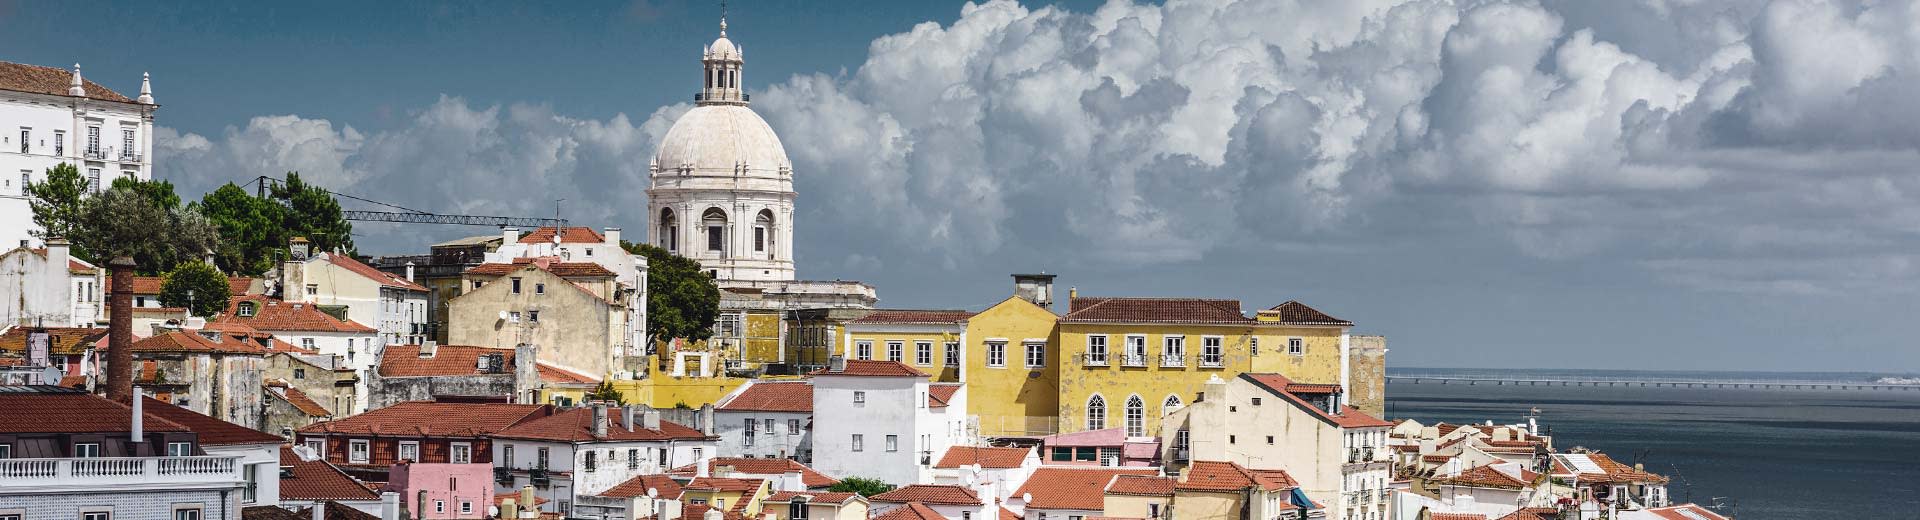 Los buildigns de color pastel de Lisboa se establecieron contra un cielo nublado.